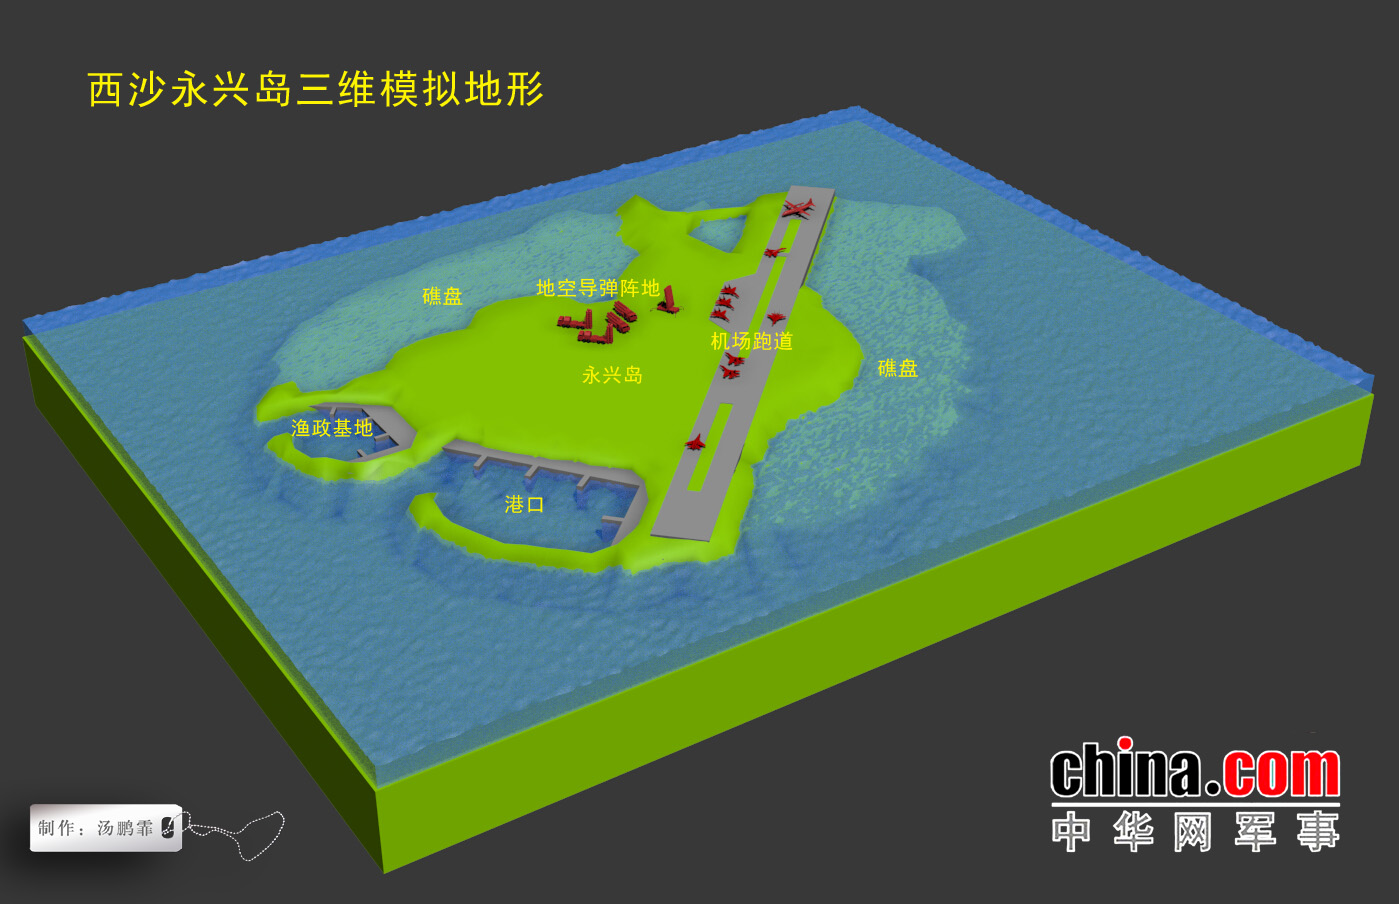 「中华讲武」3D展现红旗-9进驻永兴岛 让F-22无所遁形！